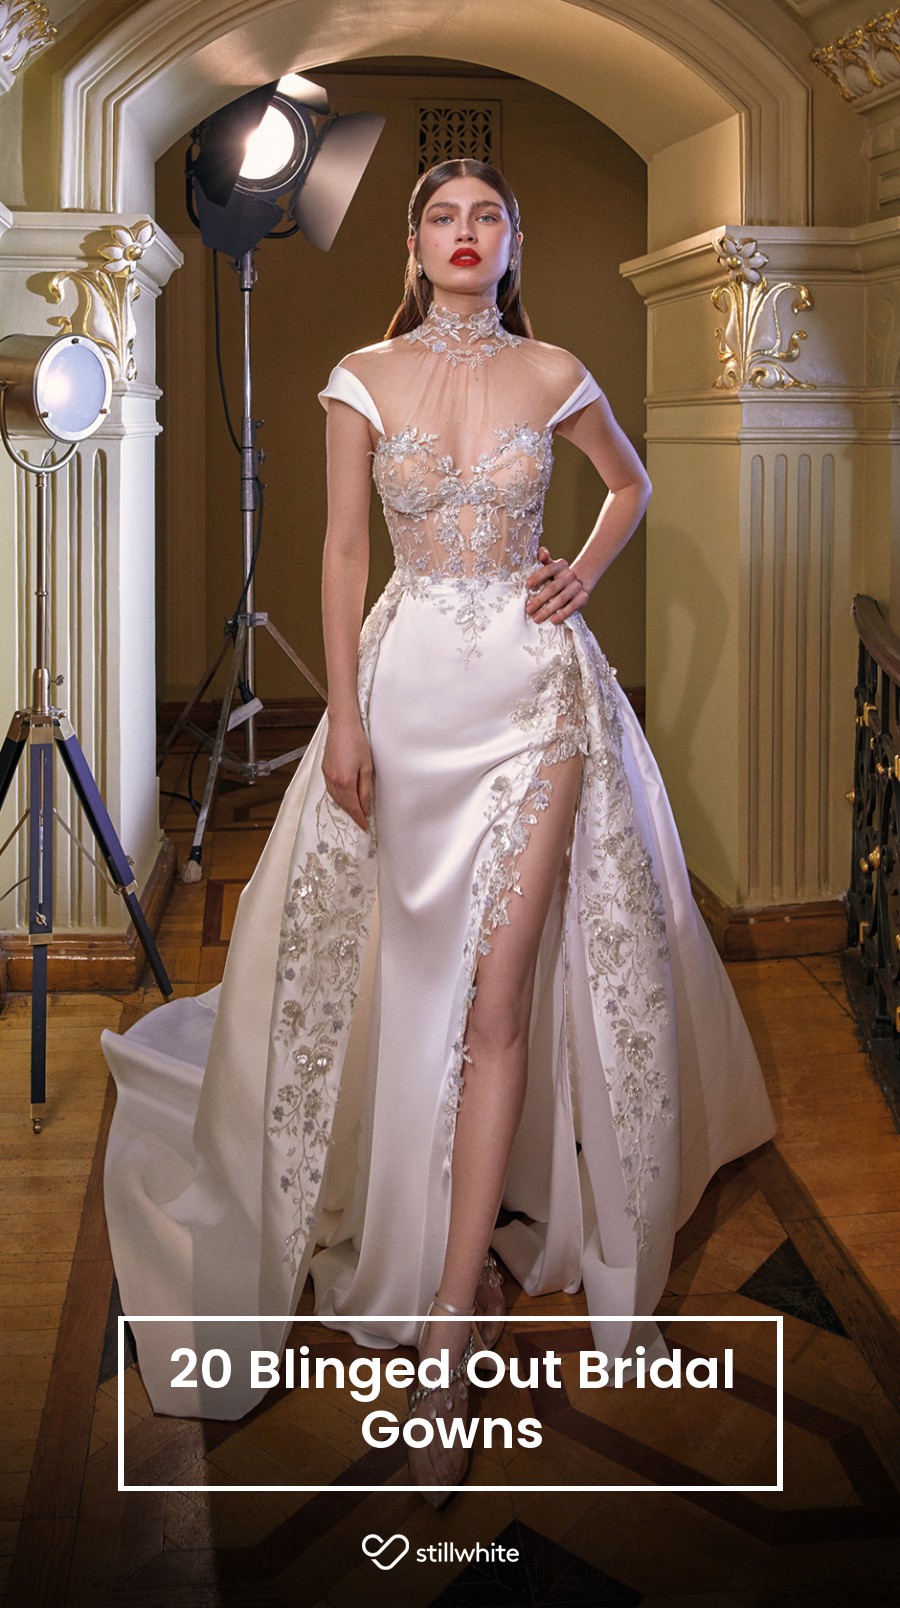 20 Blinged Out Bridal Gowns – Stillwhite Blog